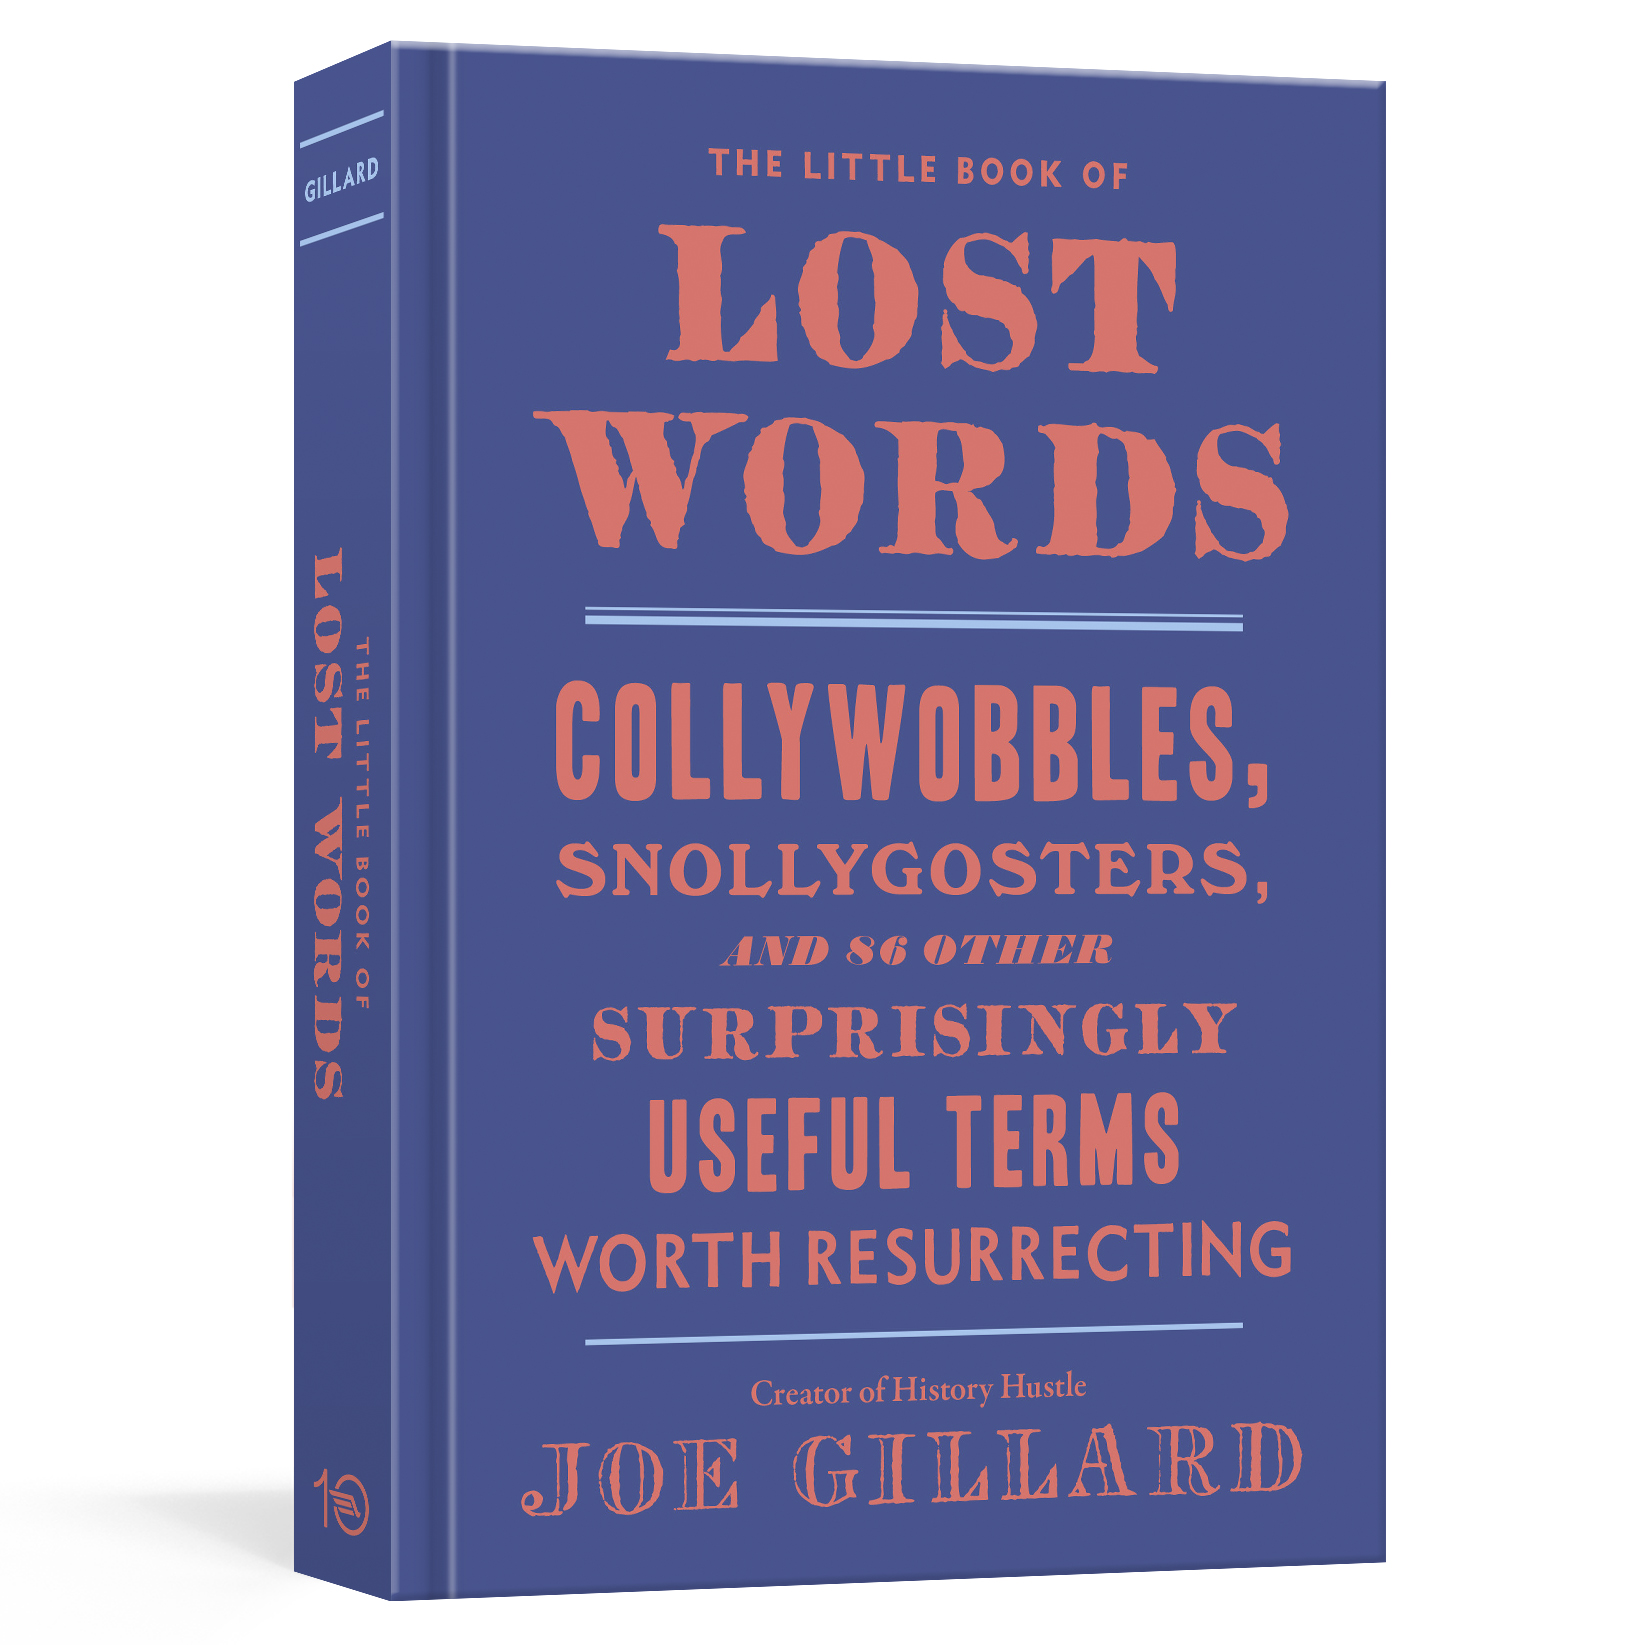 THe Little book of Lost Words by Joe Gillard History Hustle